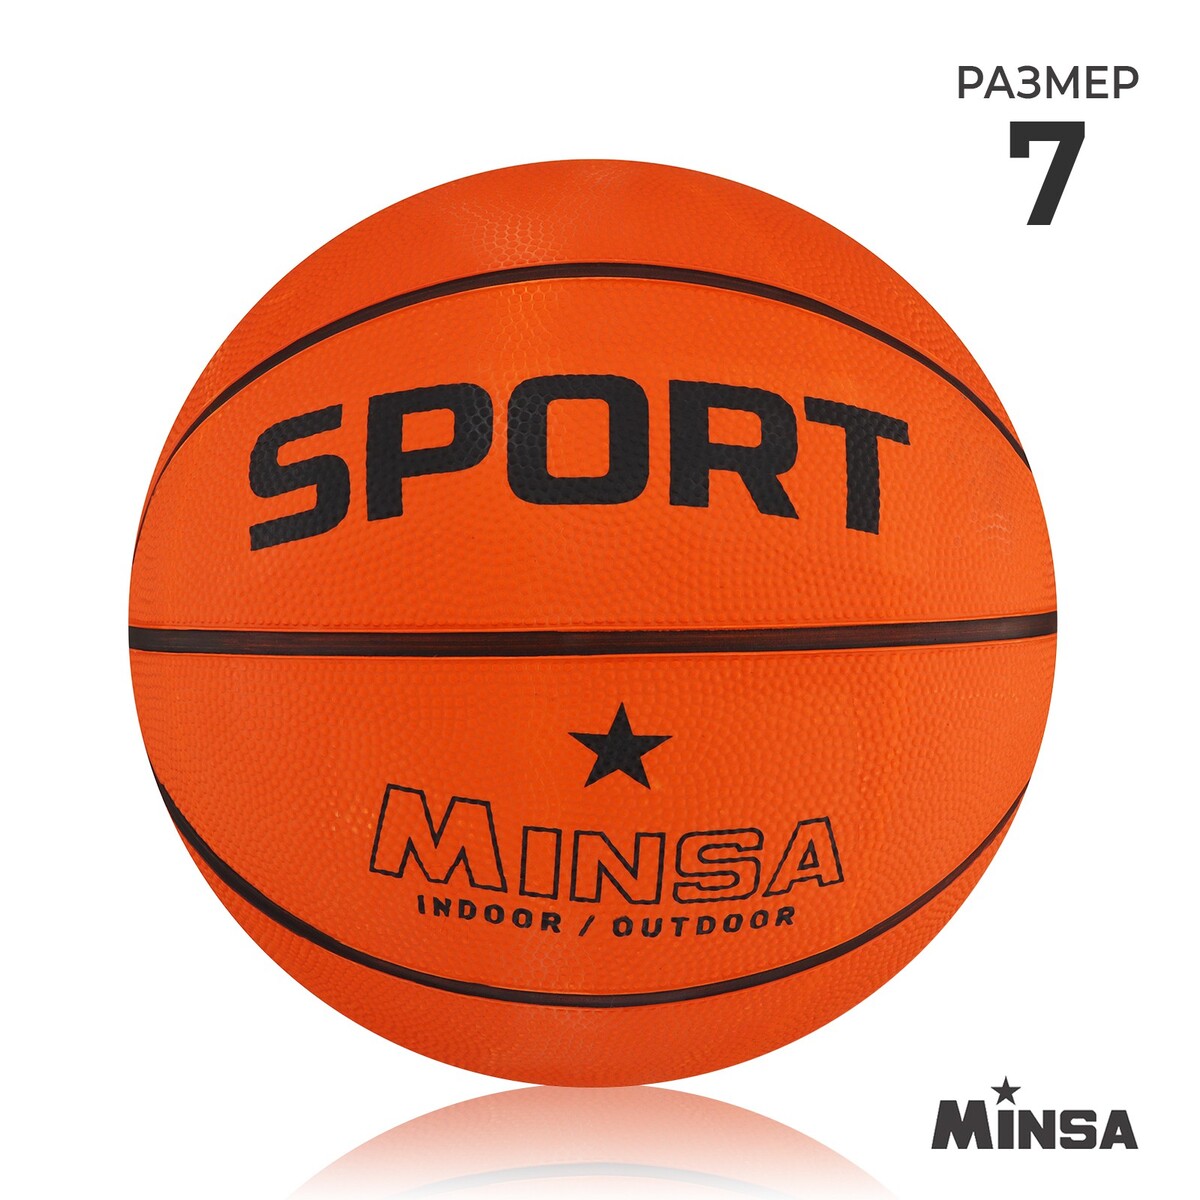 Мяч баскетбольный minsa sport, пвх, клееный, 8 панелей, р. 7 мяч баскетбольный minsa пвх клееный 8 панелей р 5